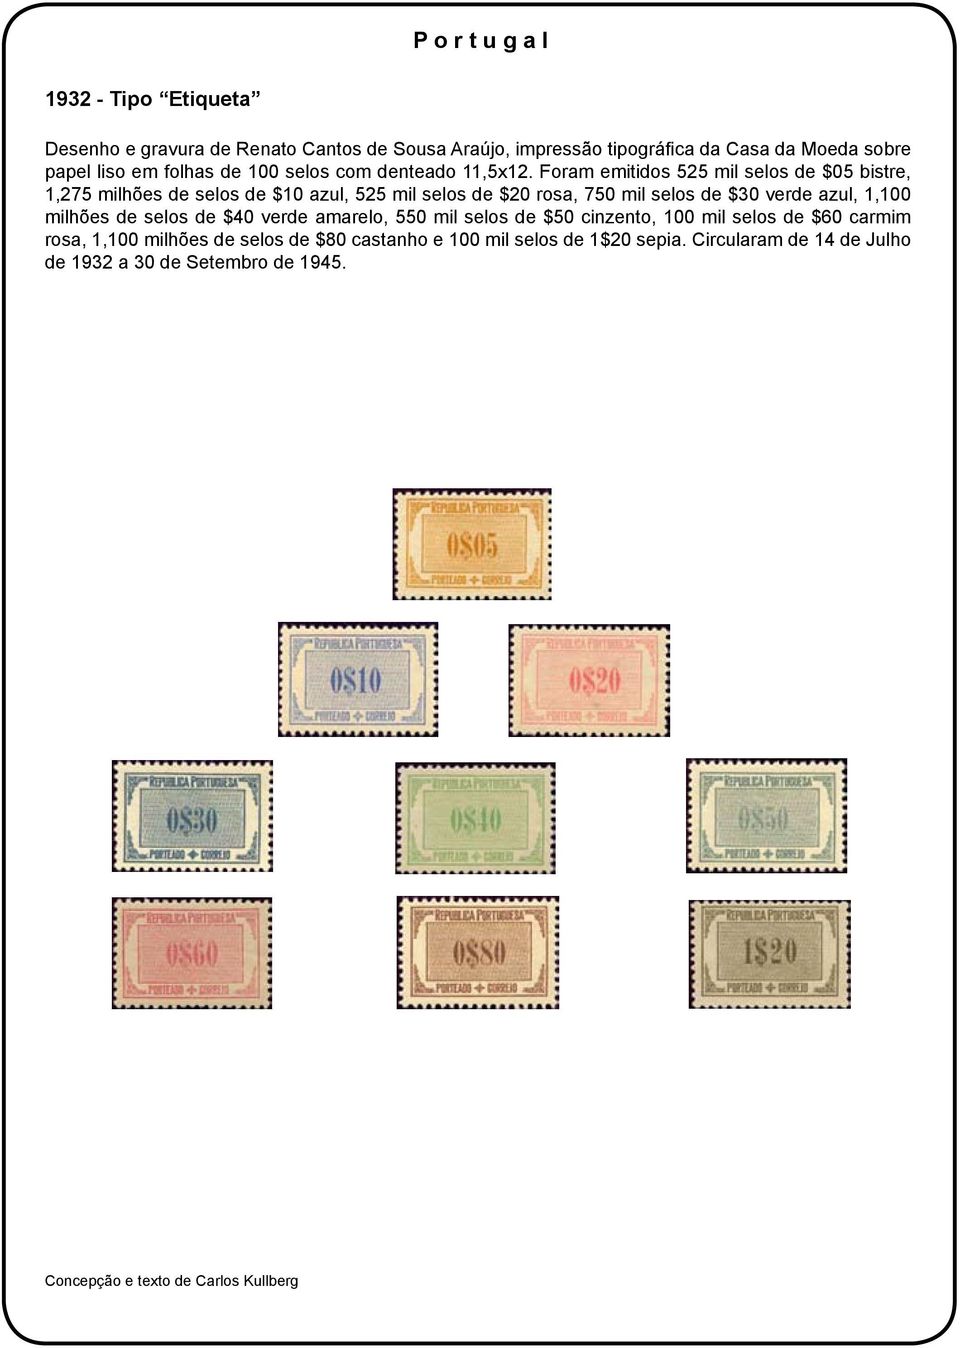 Foram emitidos 525 mil selos de $05 bistre, 1,275 milhões de selos de $10 azul, 525 mil selos de $20 rosa, 750 mil selos de $30 verde